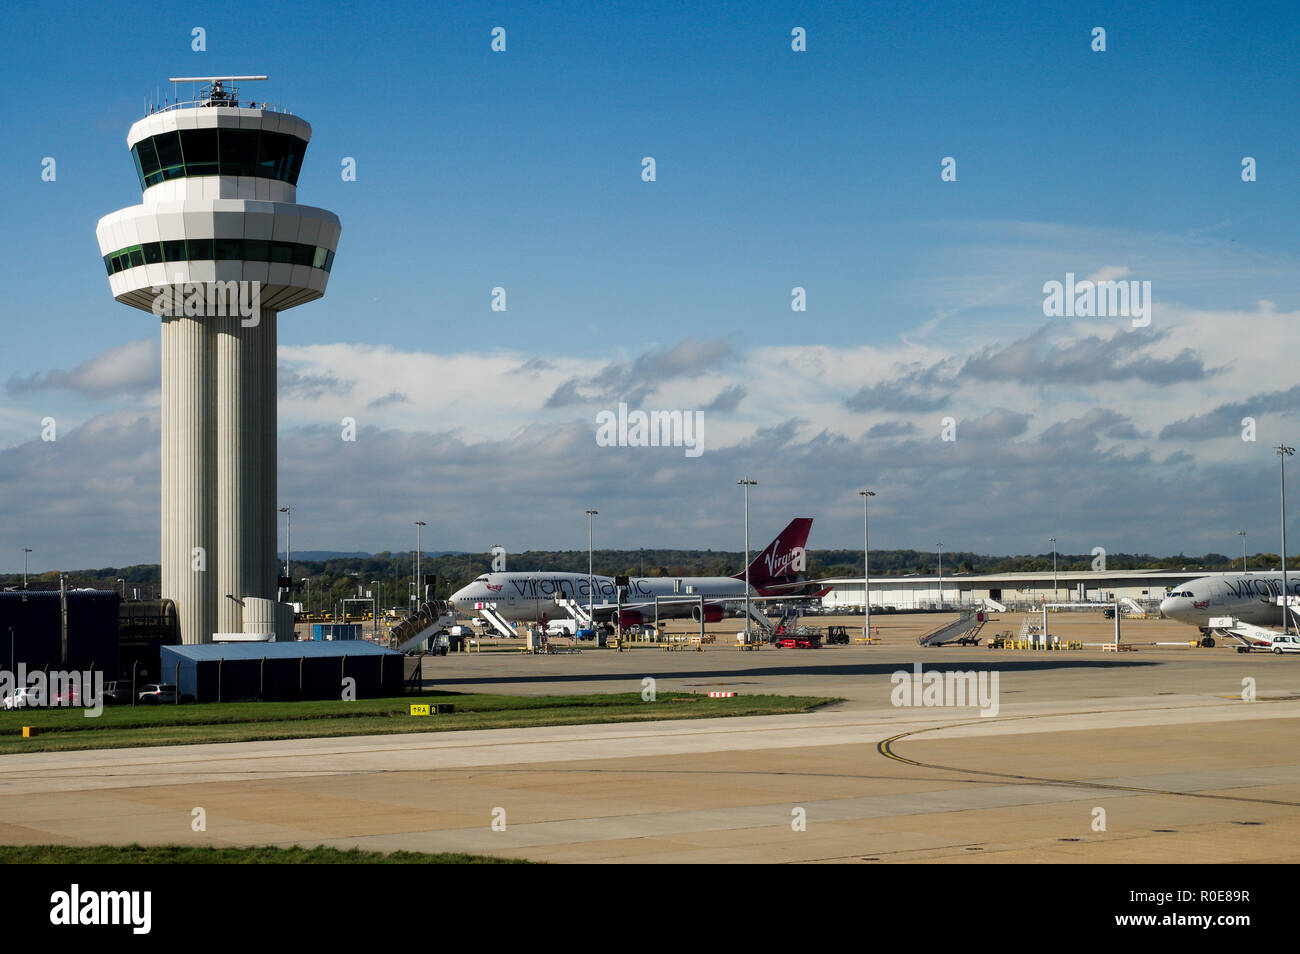 Aeropuerto de Gatwick de la Torre de Control del Tráfico Aéreo en el sureste de Inglaterra, en un brillante día soleado Foto de stock